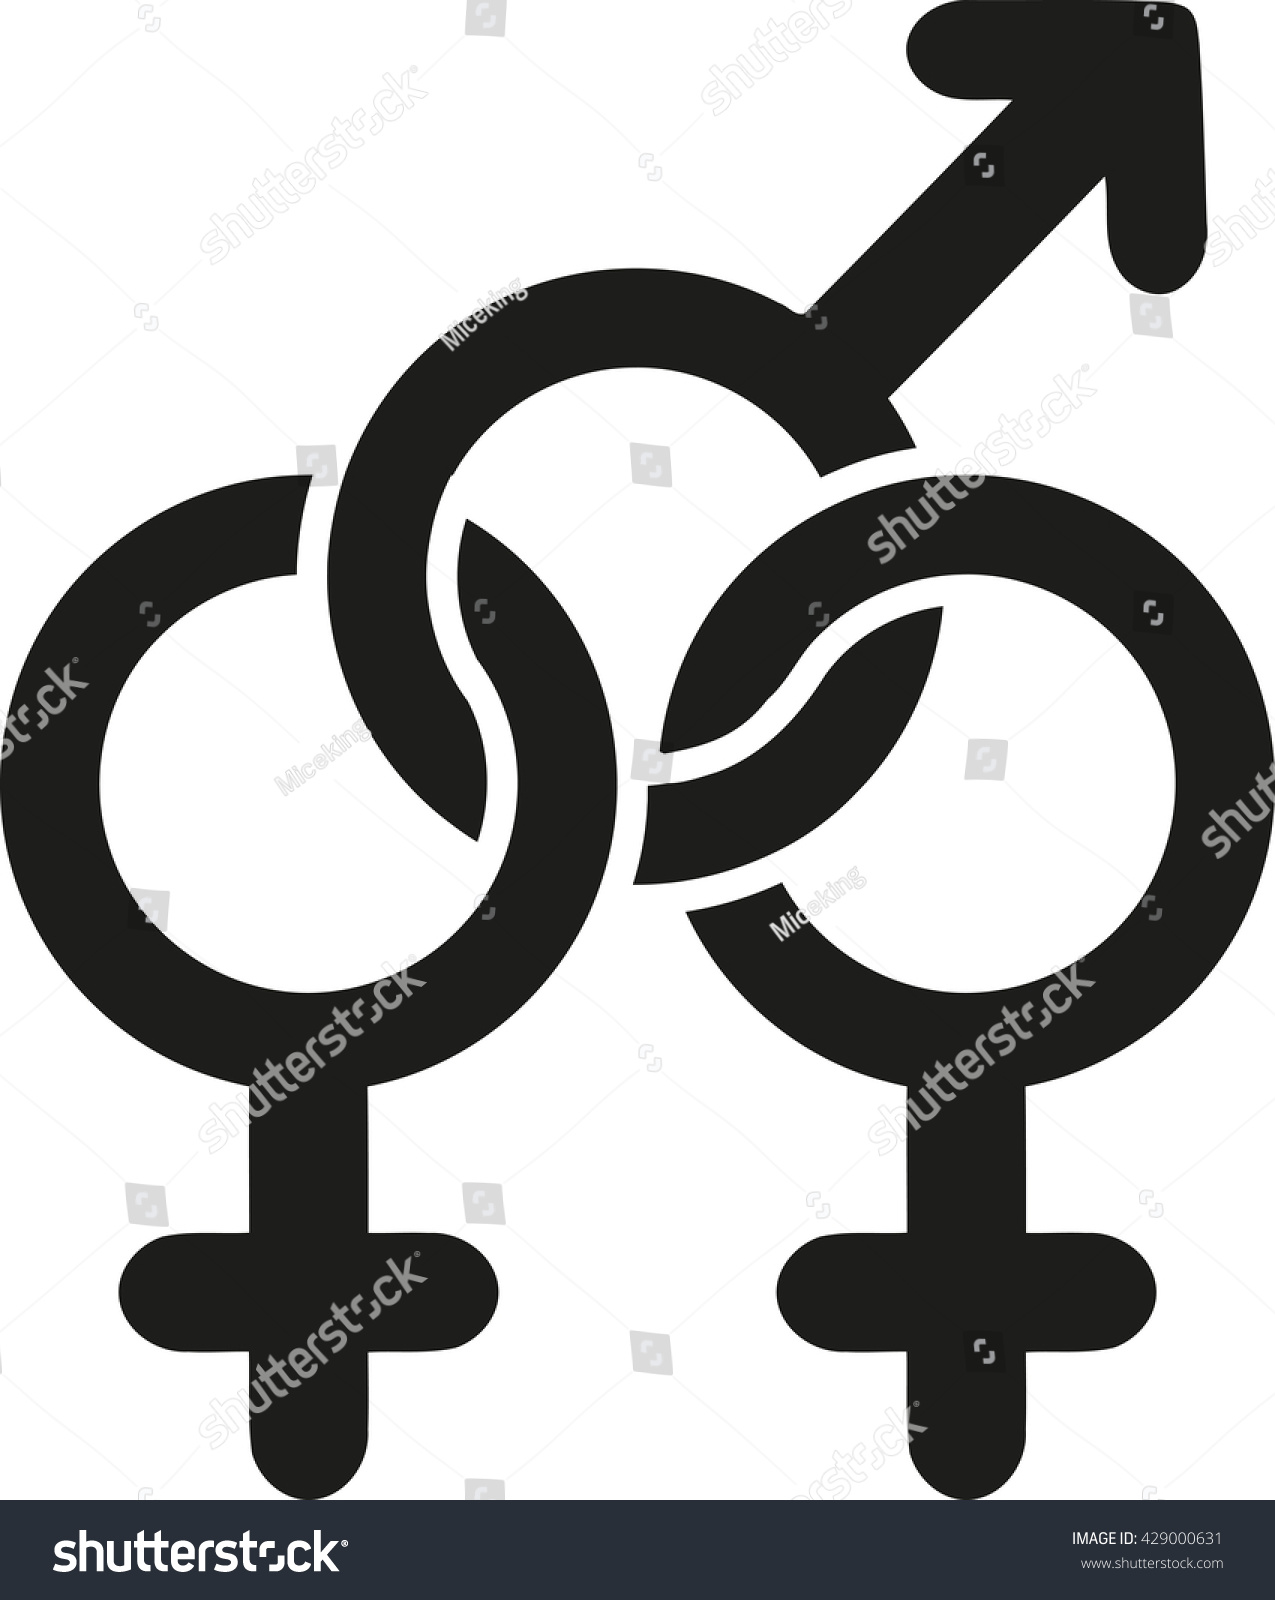 Bisexual Sign: стоковая векторная графика (без лицензионных платежей), 4290...